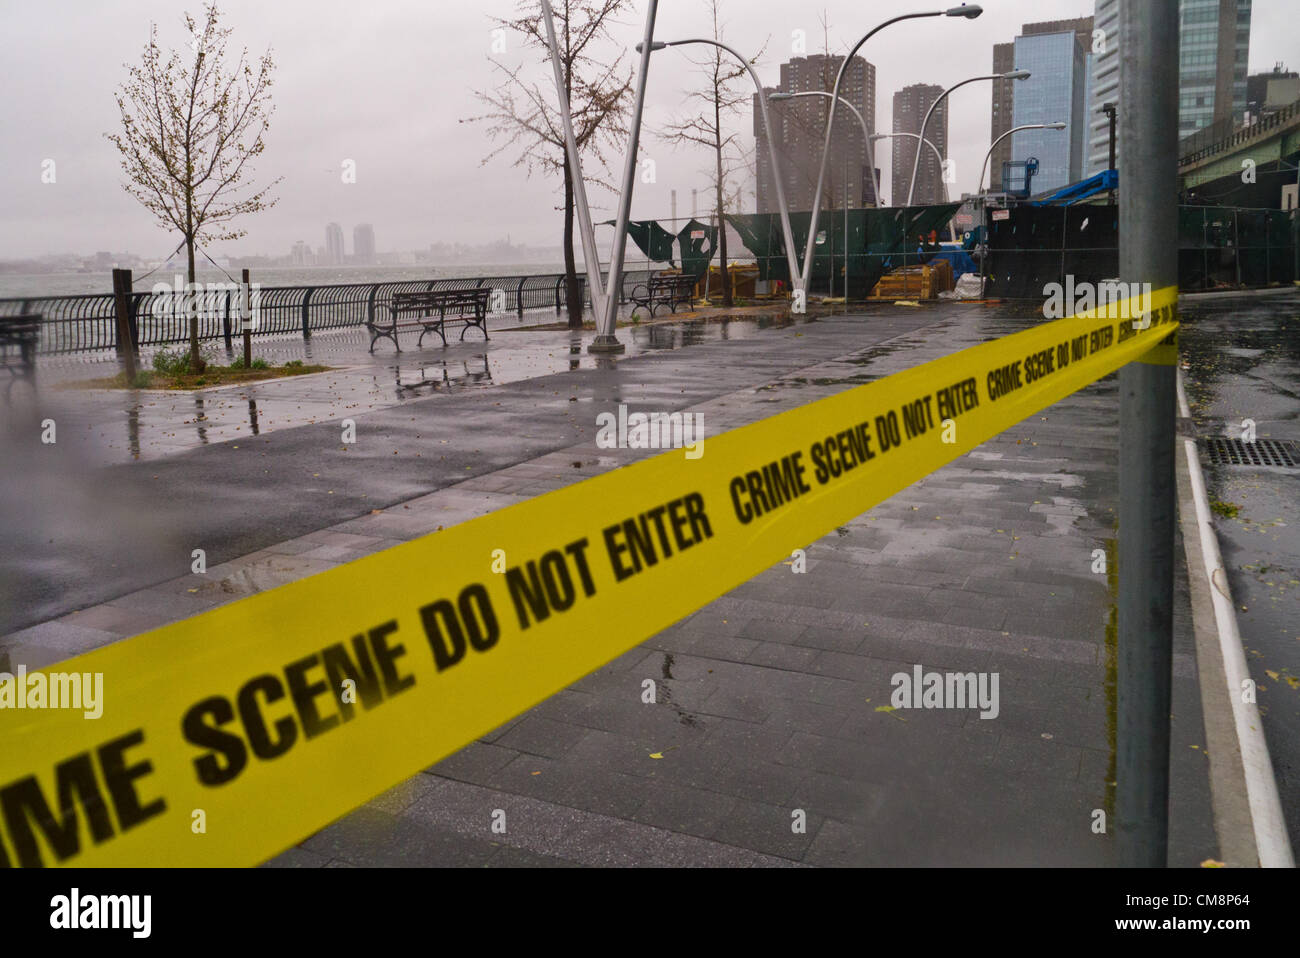 New York, Stati Uniti d'America. 29 ottobre, 2012. Scene della East River e FDR prima dell'arrivo dell'Uragano Sandy Ottobre 29, 2012 in New York City. (Foto di Donald Bowers/Alamy Live News) Foto Stock